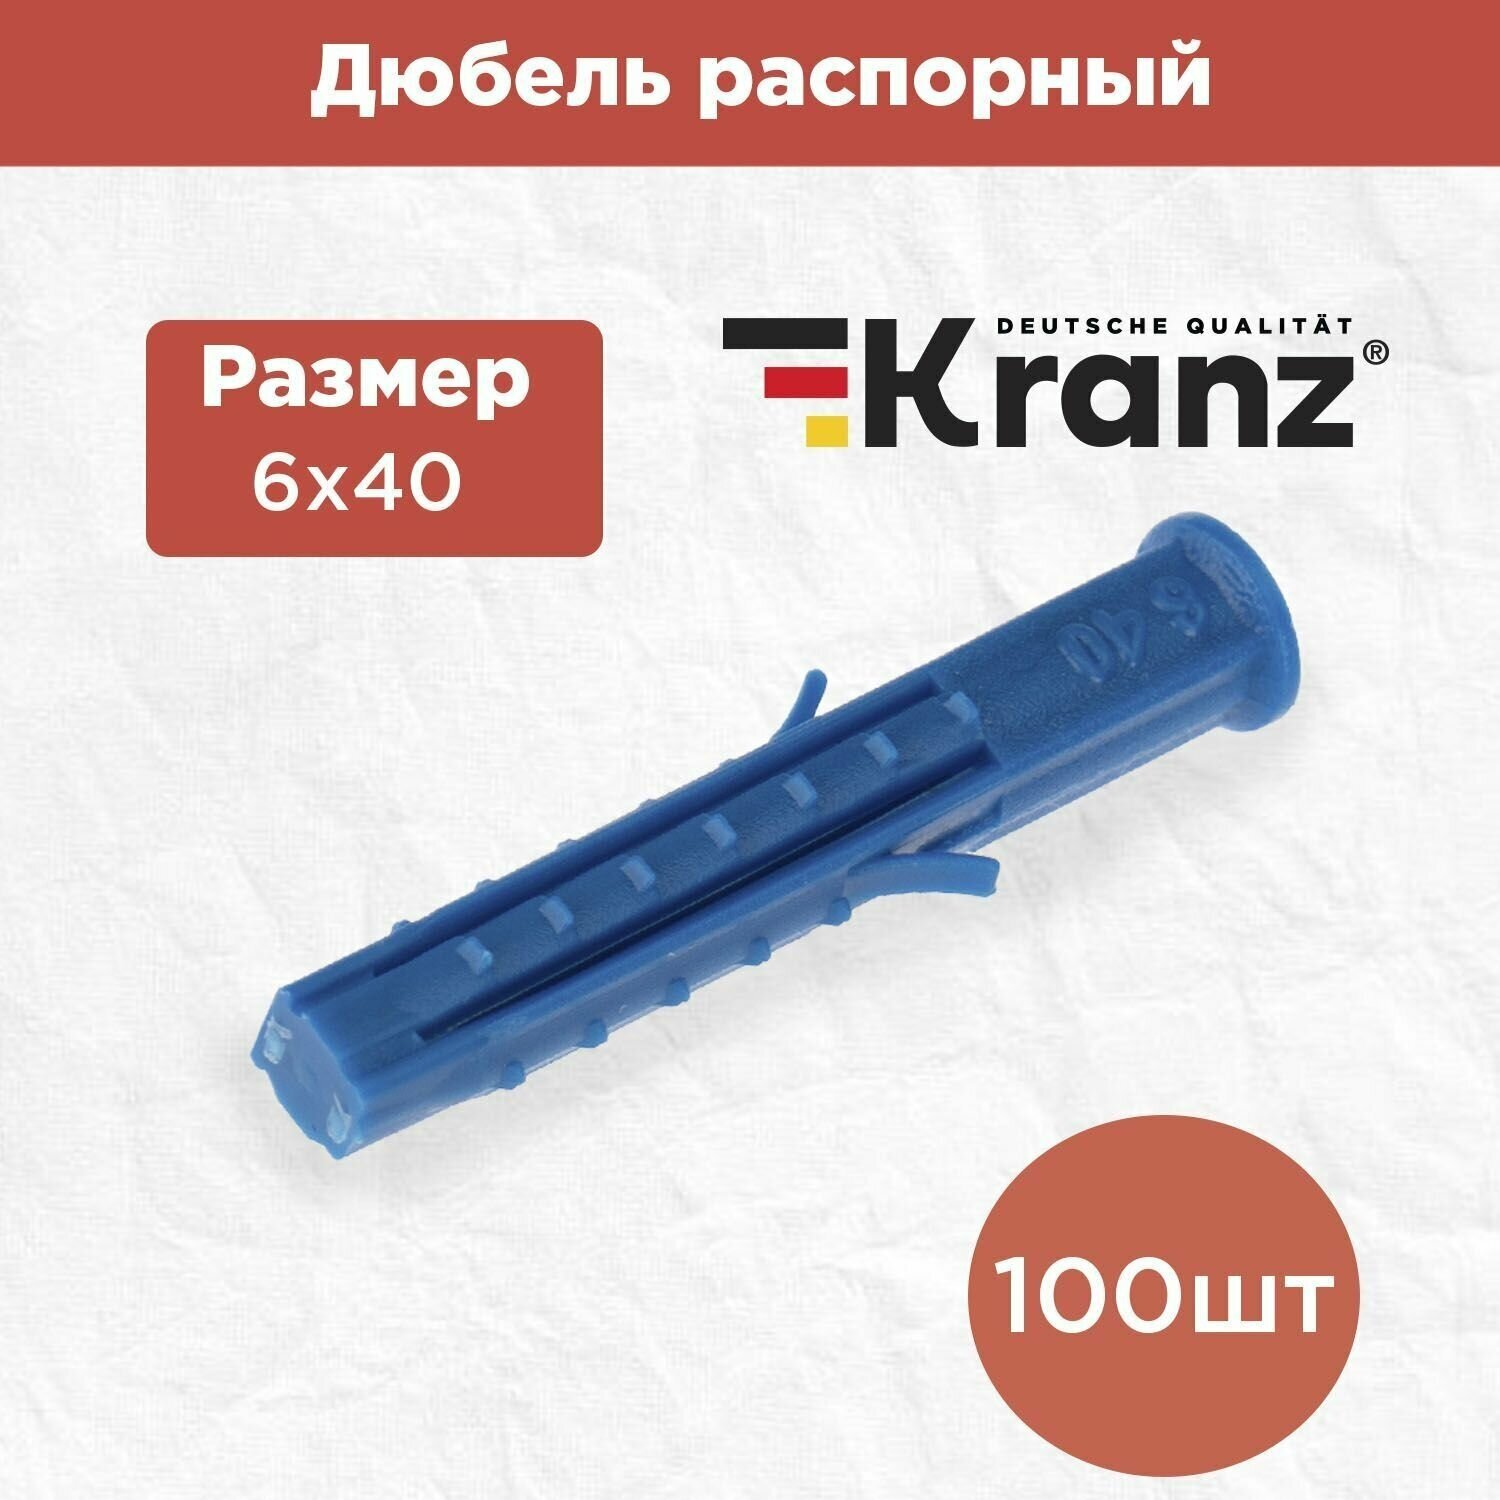 Дюбель распорный KRANZ высокопрочный 6х40, синий, 100 штук в упаковке